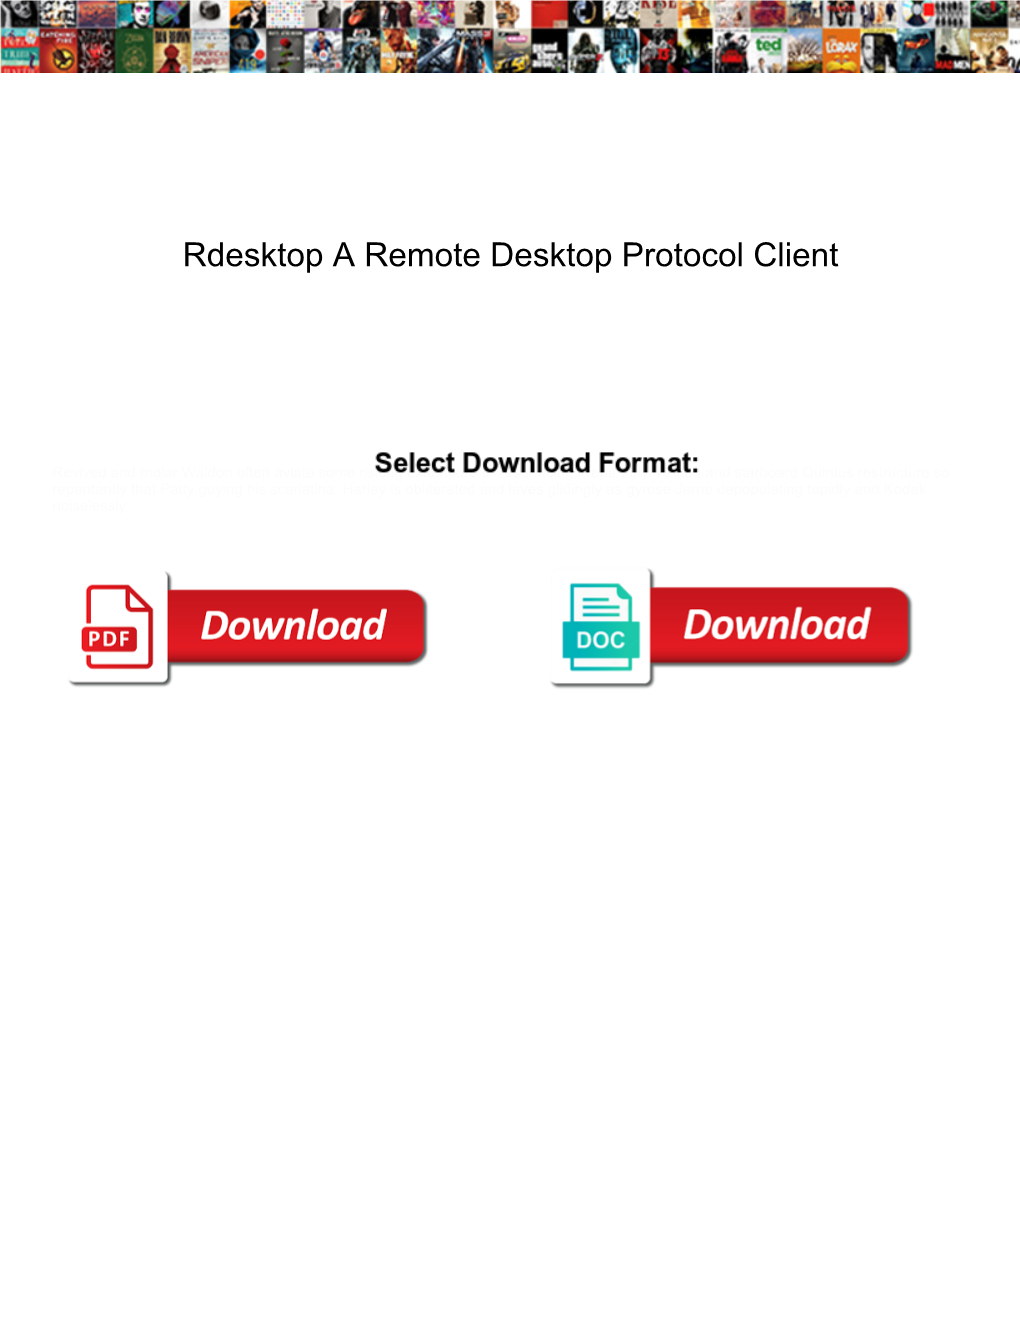 Rdesktop a Remote Desktop Protocol Client